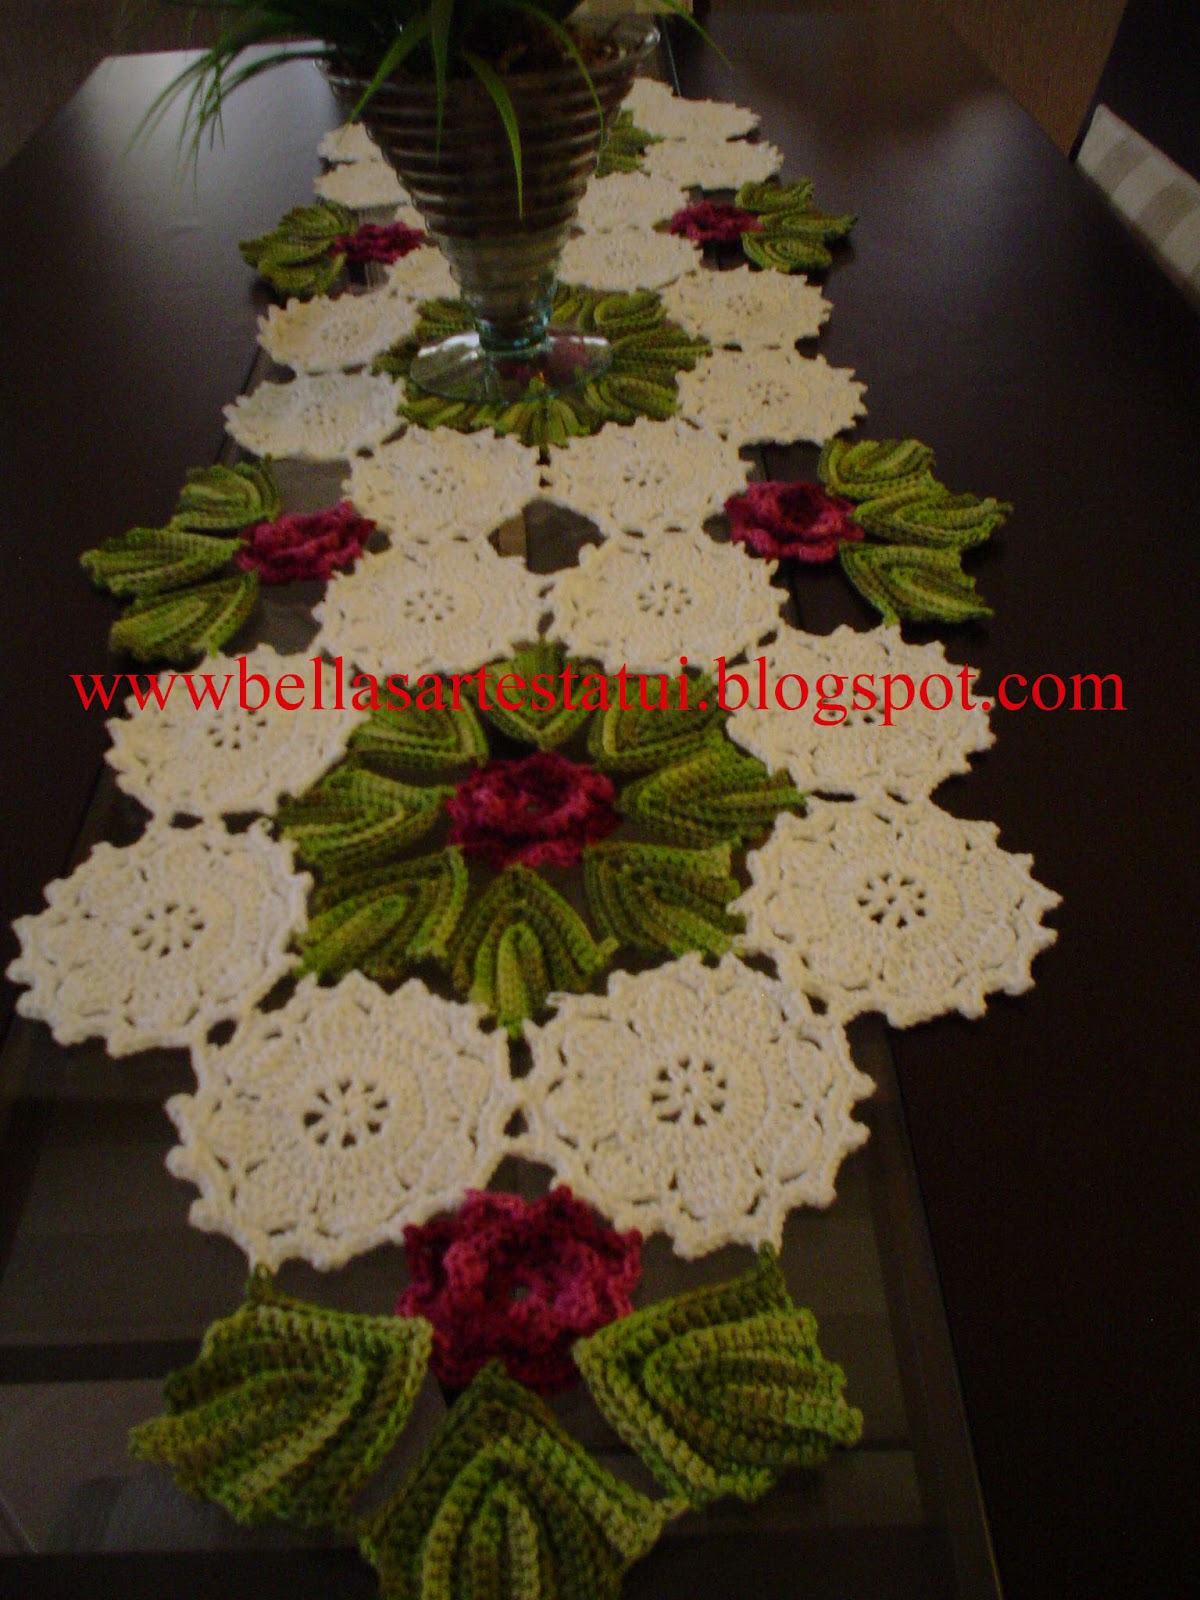 trilhos de mesa de crochê com flores